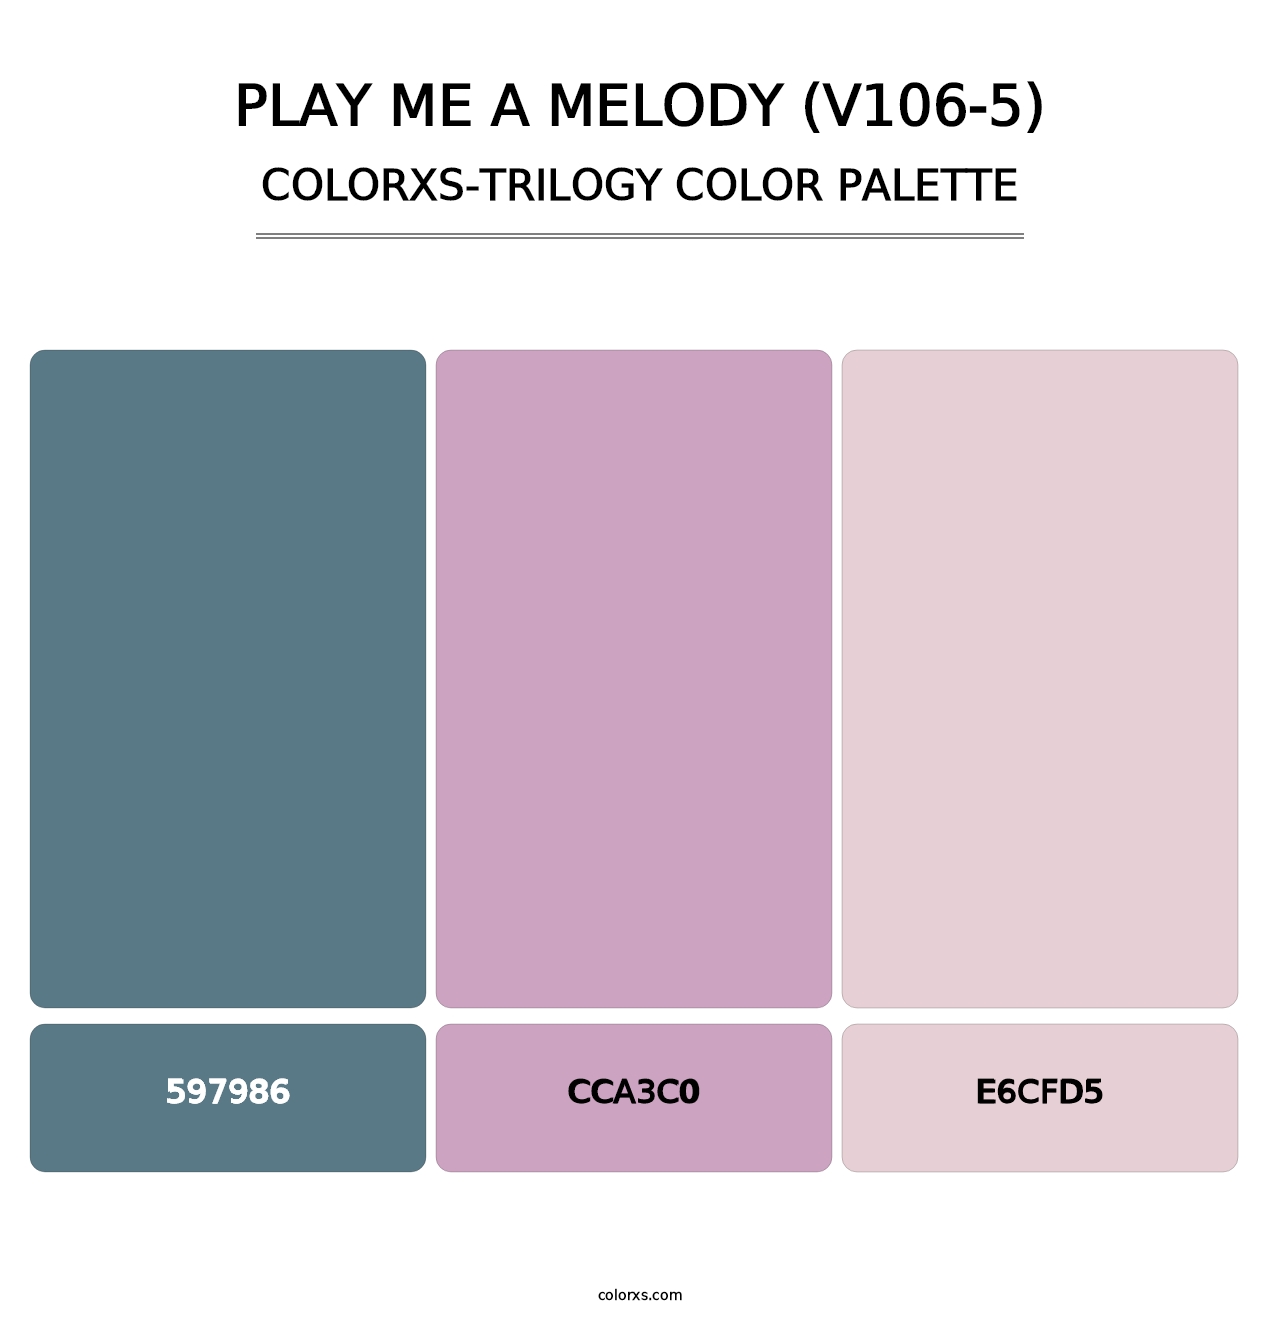 Play Me a Melody (V106-5) - Colorxs Trilogy Palette